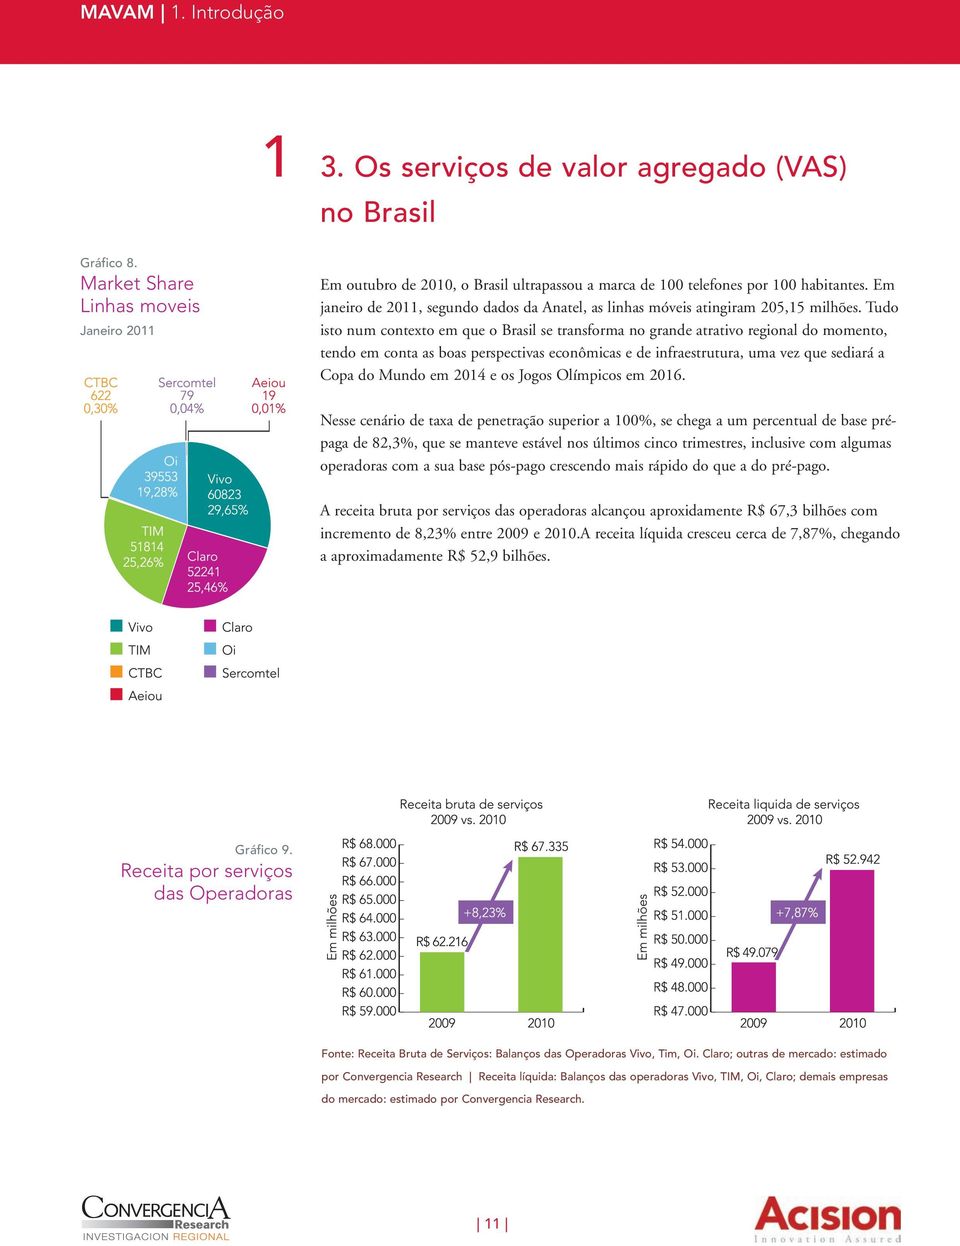 Em janeiro de 2011, segundo dados da Anatel, as linhas móveis atingiram 205,15 milhões.